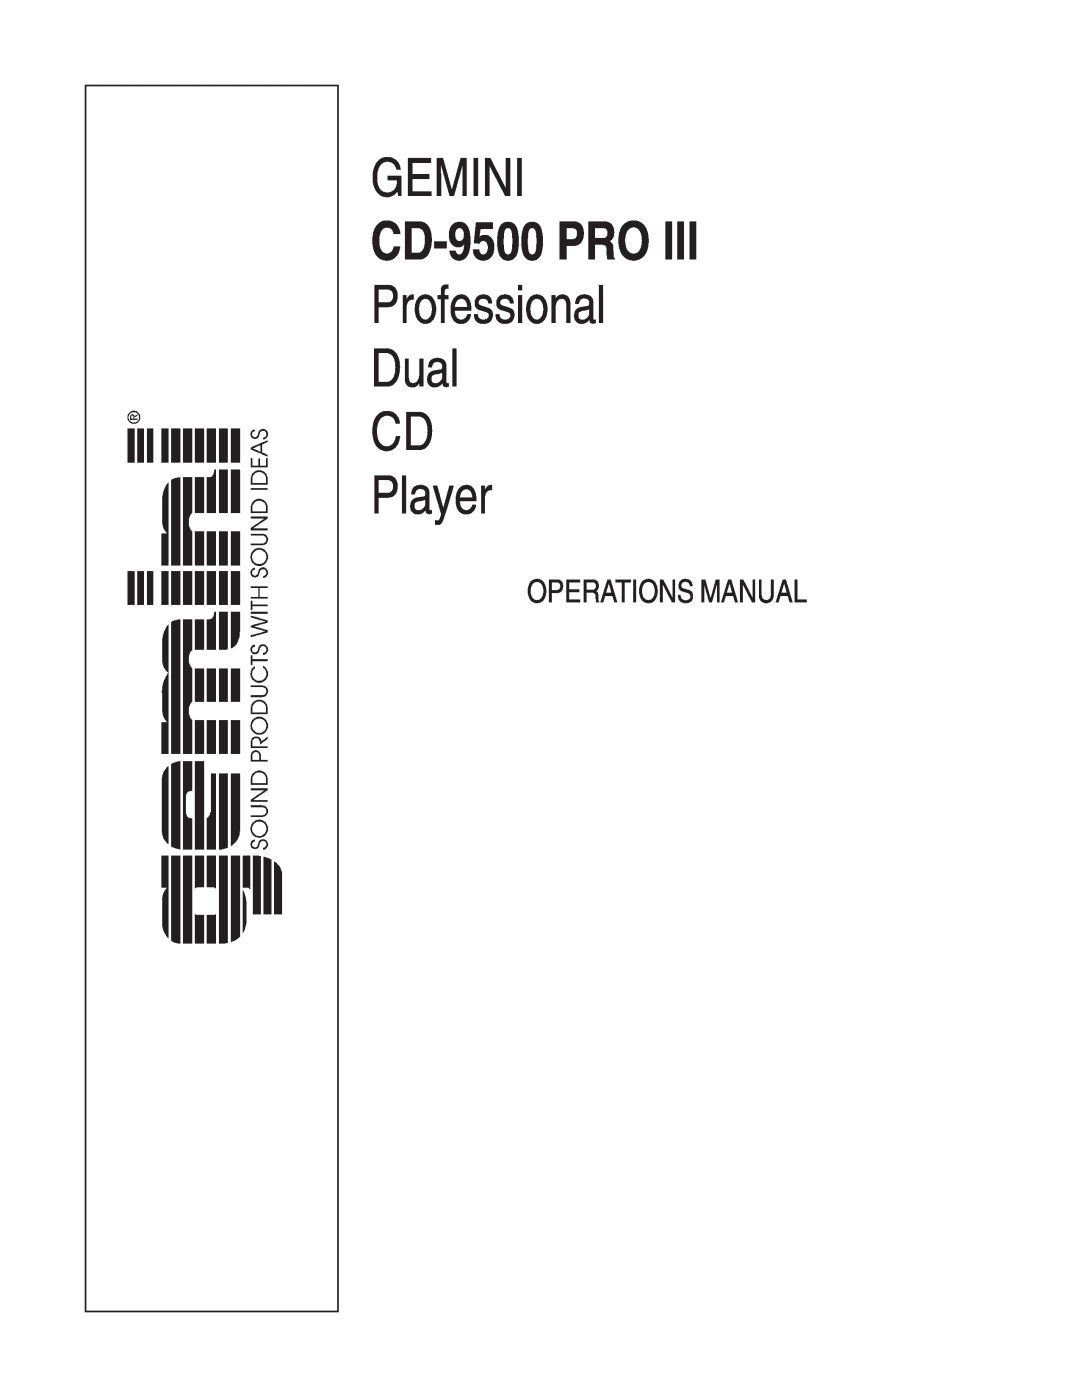 Gemini CD-9500 Pro III manual Gemini, CD-9500PRO, Professional Dual CD Player, Operations Manual 